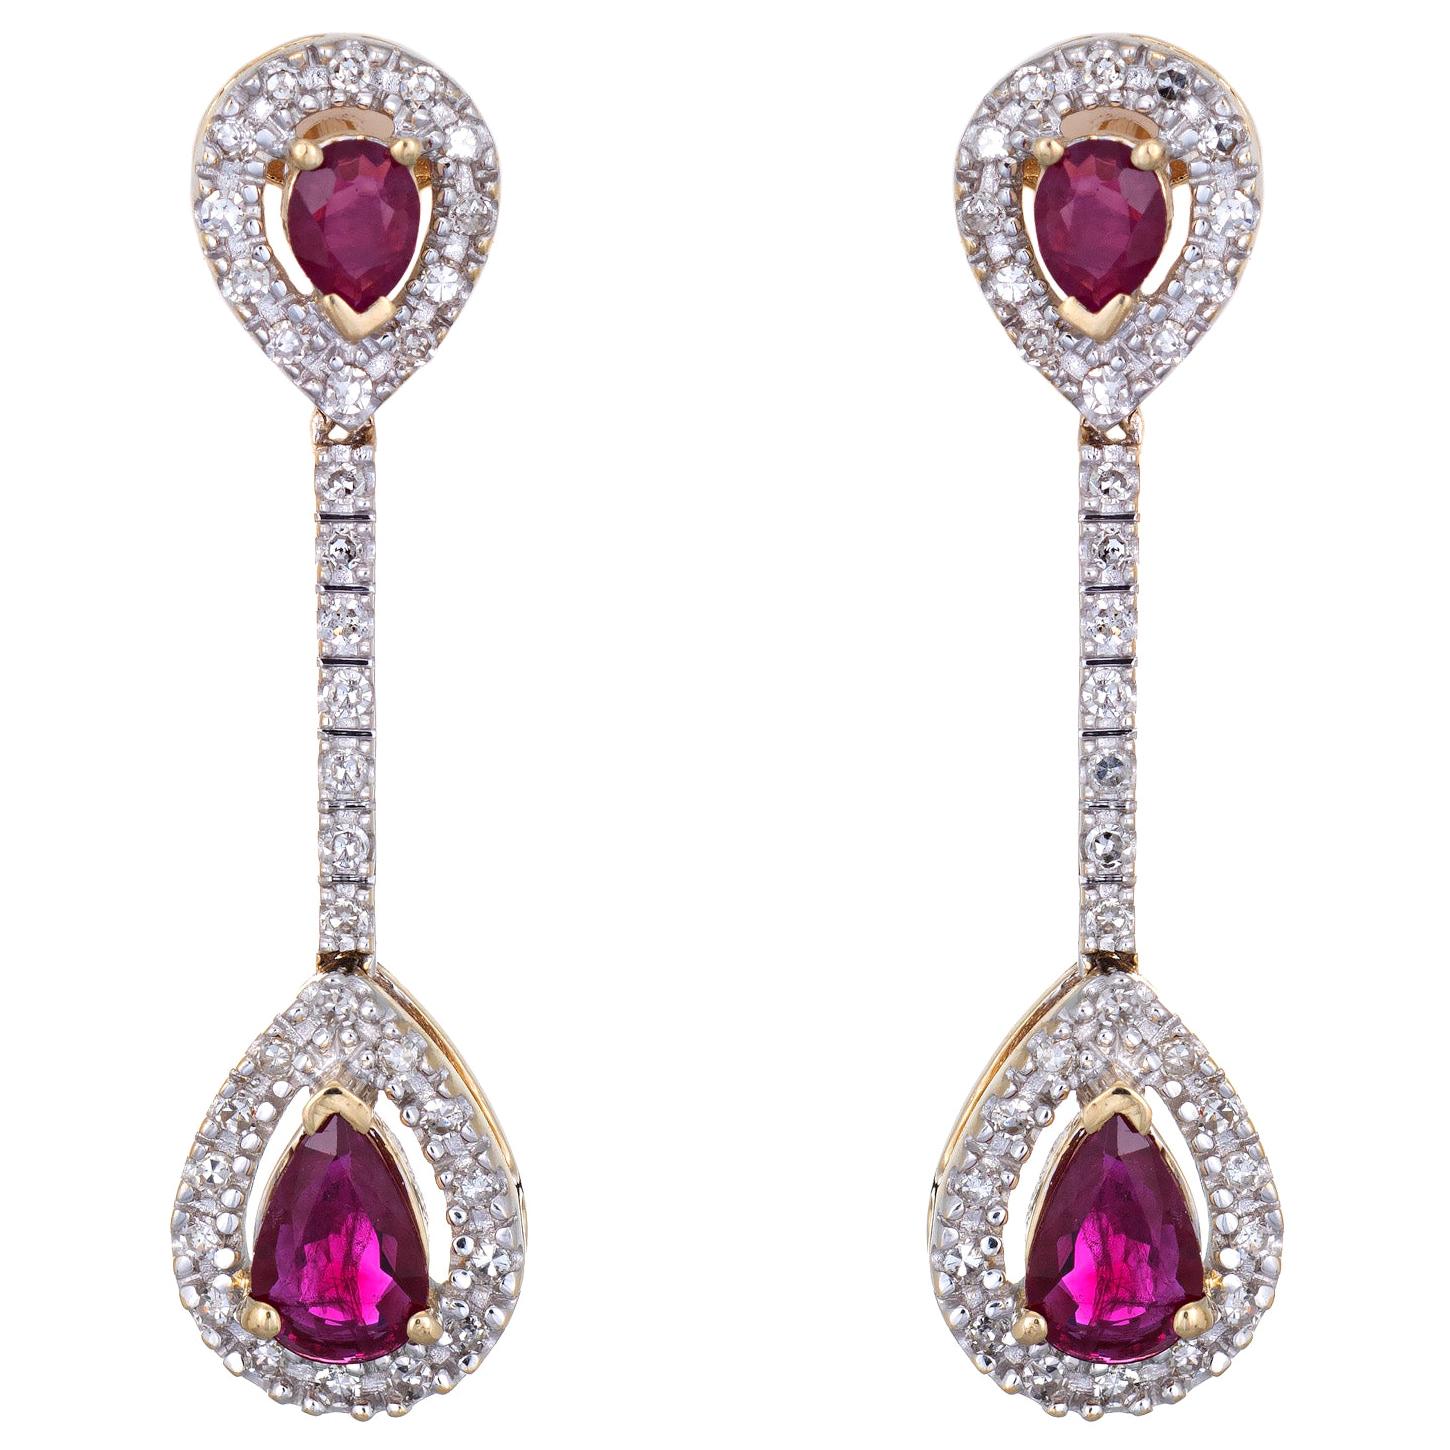 Ruby Diamond Earrings Vintage 14 Karat Gold Linear Drops Pear Shaped Jewelry